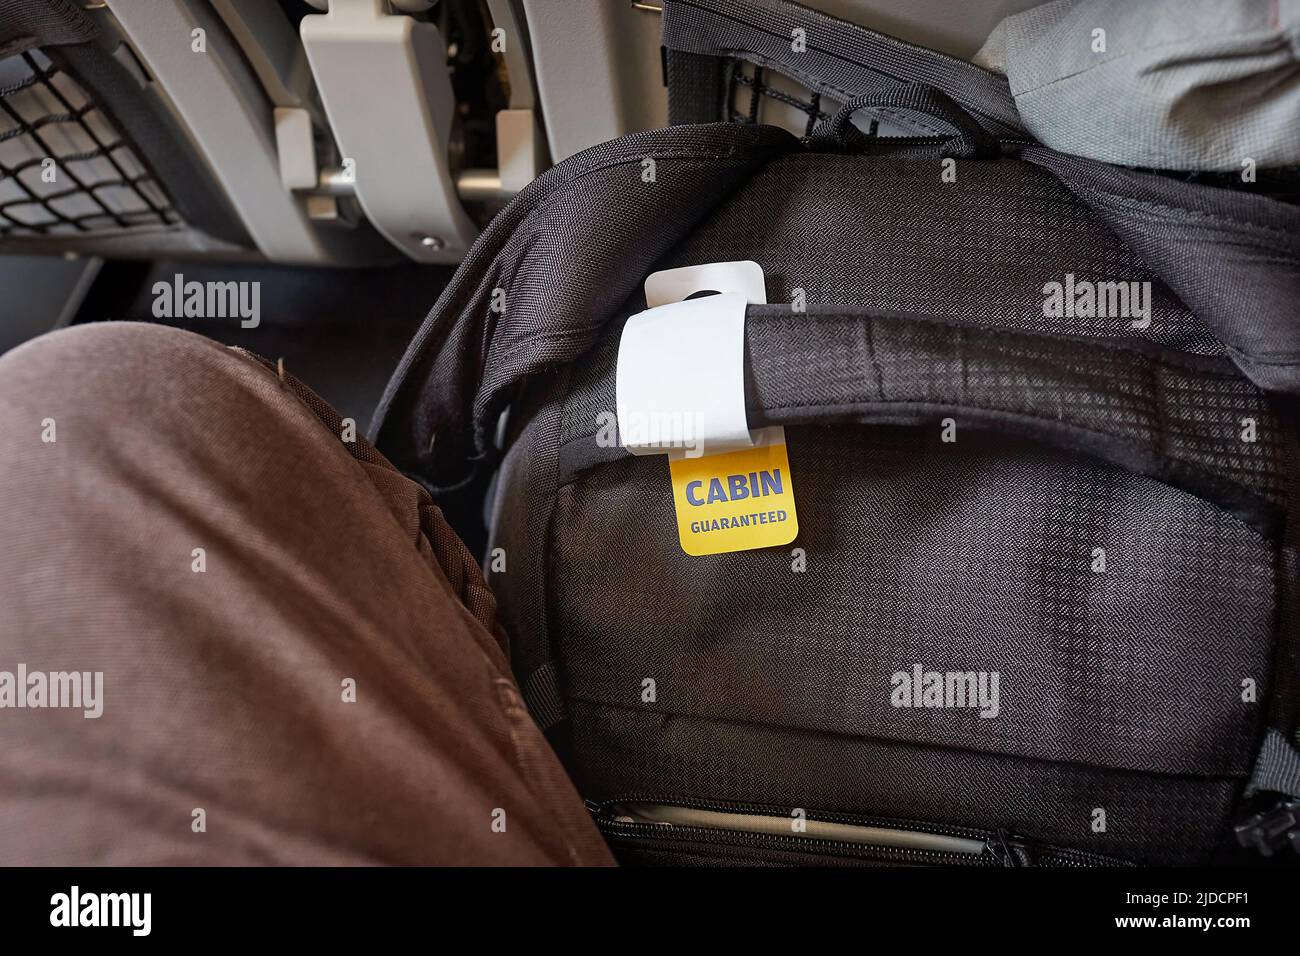 Bolsa de cabina delante del seet en el vuelo en clase turista Foto de stock